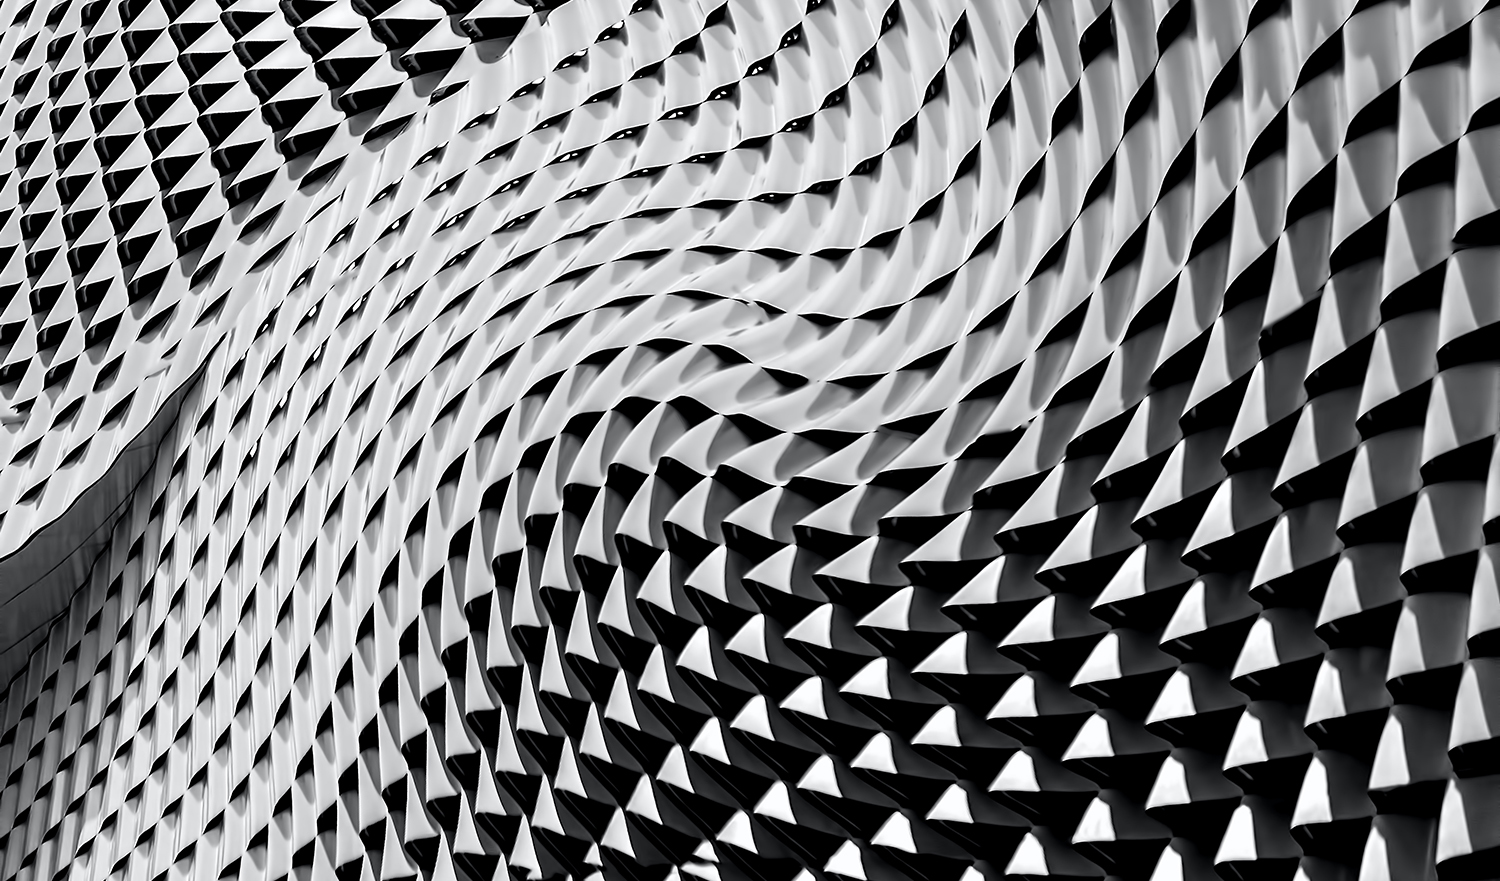 Geometric grey swirling pattern